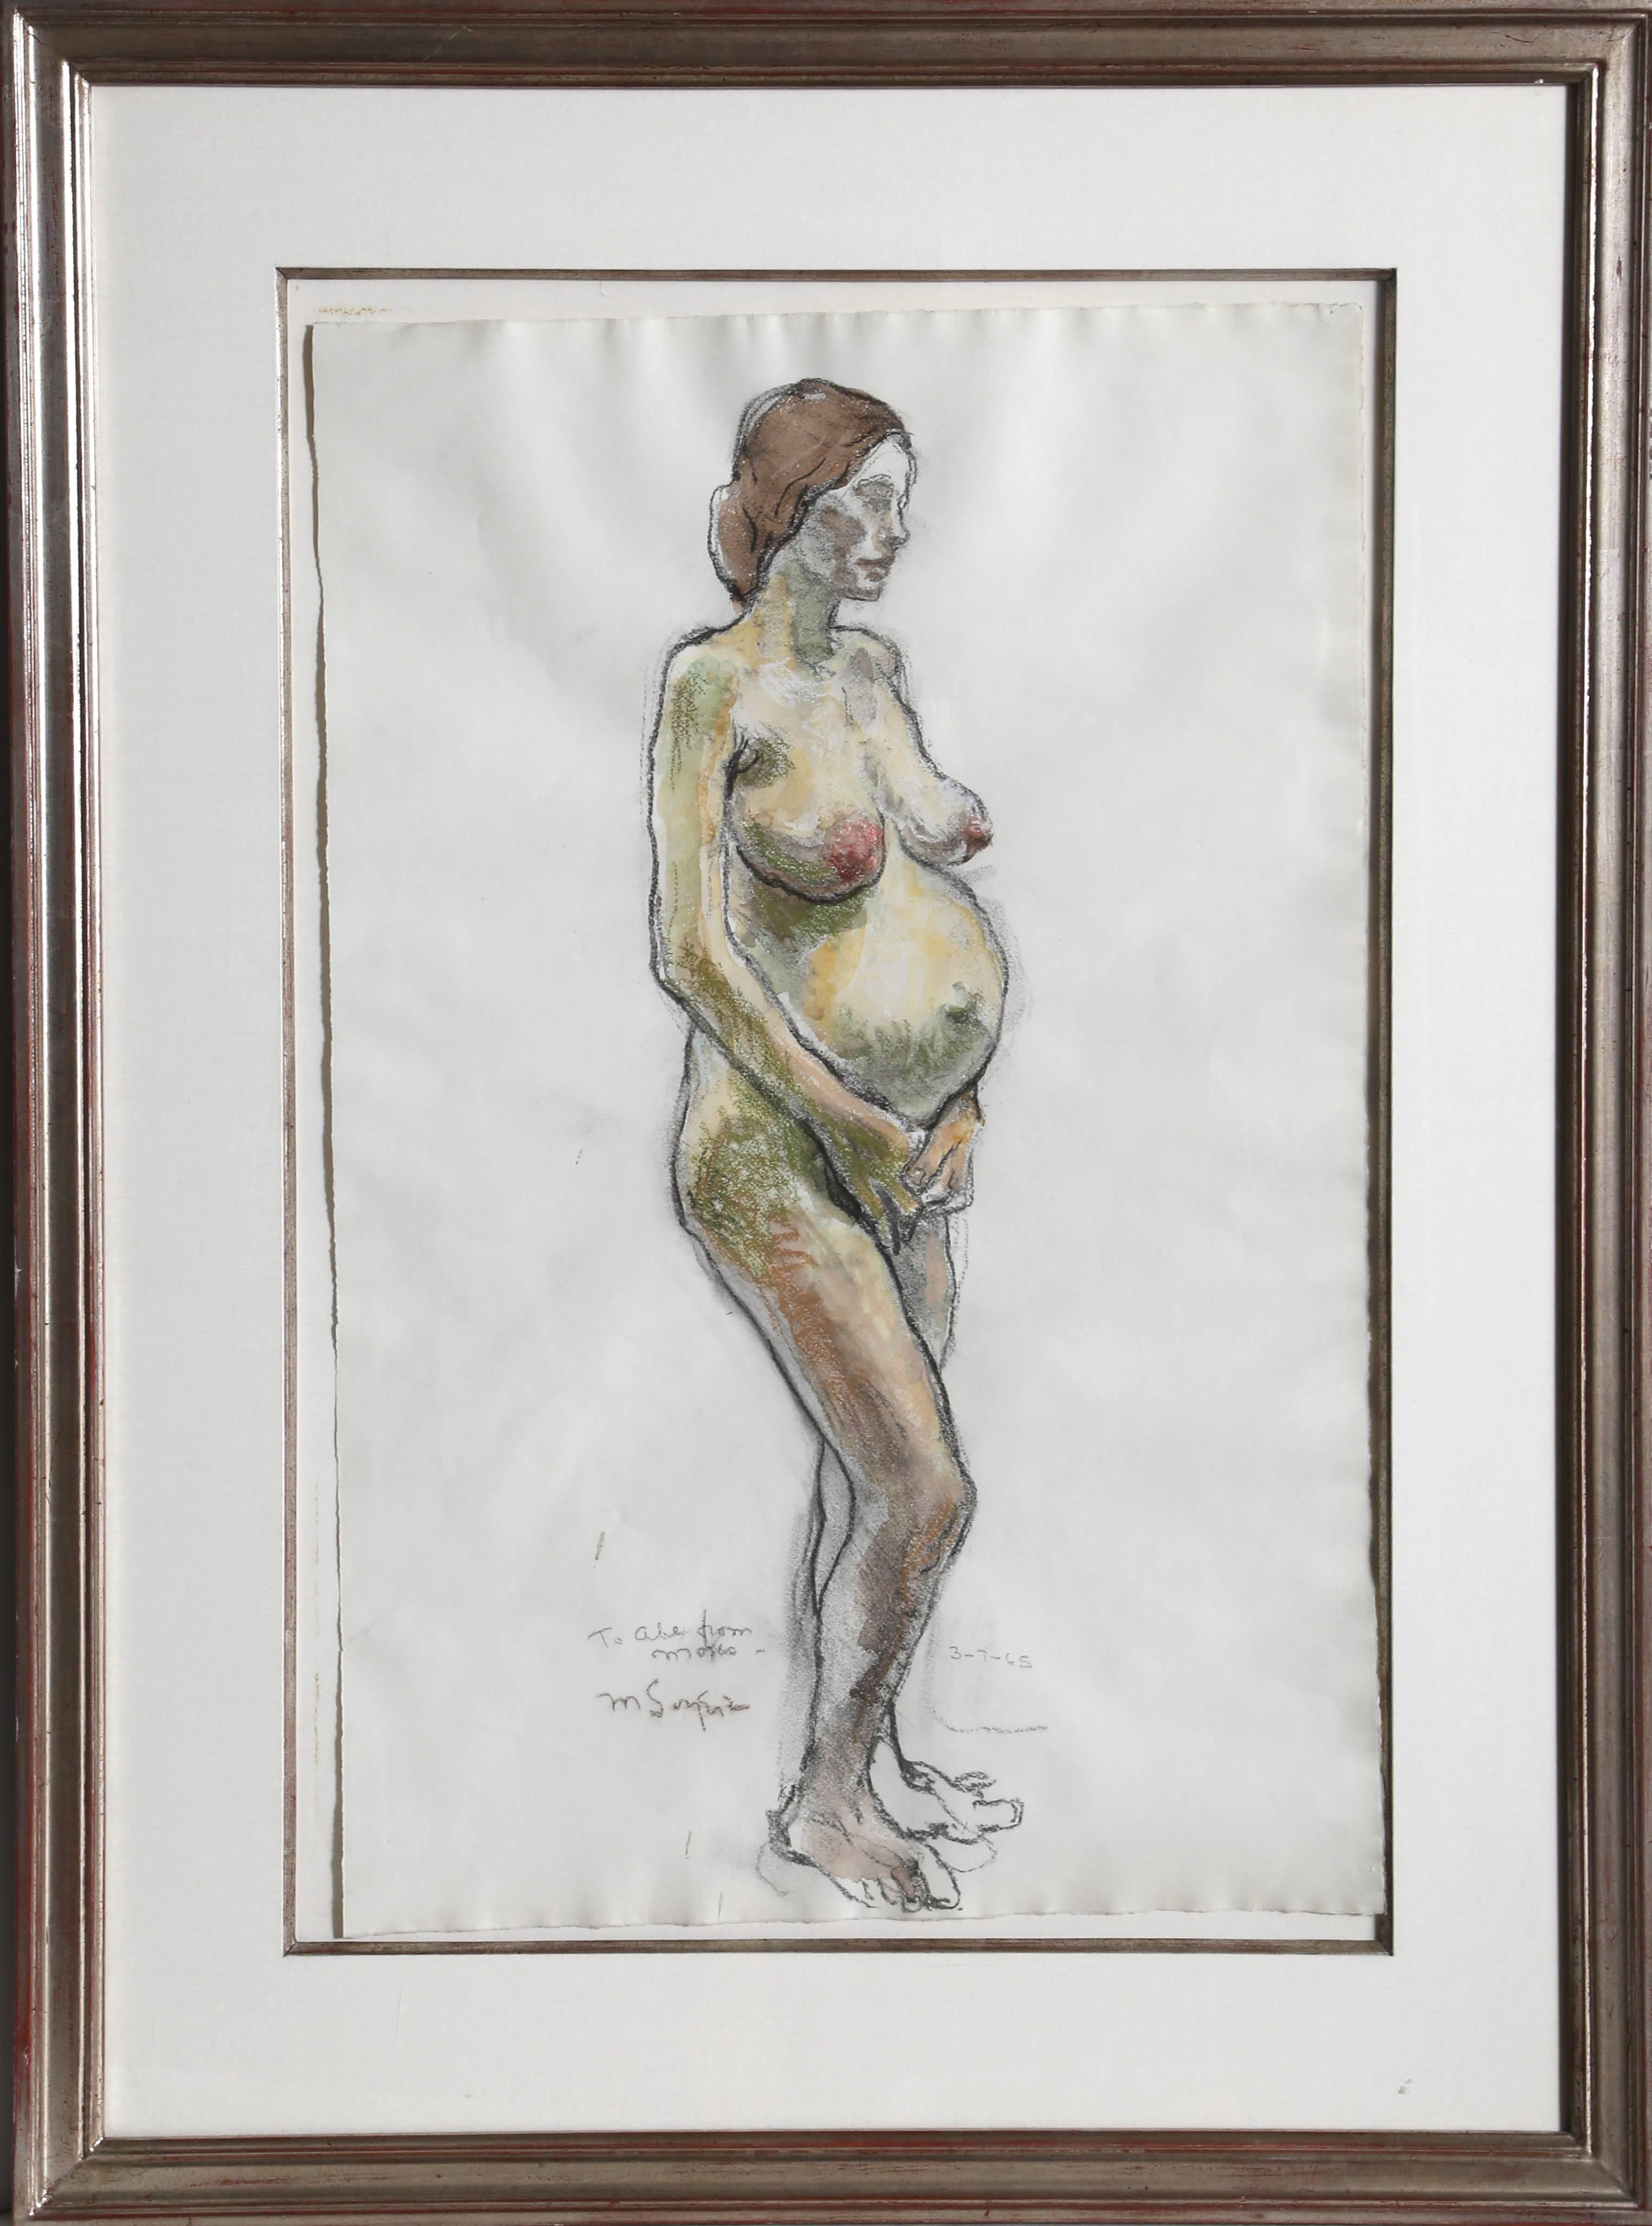 Artiste : Moses Soyer, américain (1899 - 1974)
Titre : Nue enceinte debout
Année : 1965
Moyen : Pastel sur papier, signé à gauche.
Taille : 24 x 15,5 in. (60,96 x 39,37 cm)
Taille du cadre : 33 x 24.5 pouces